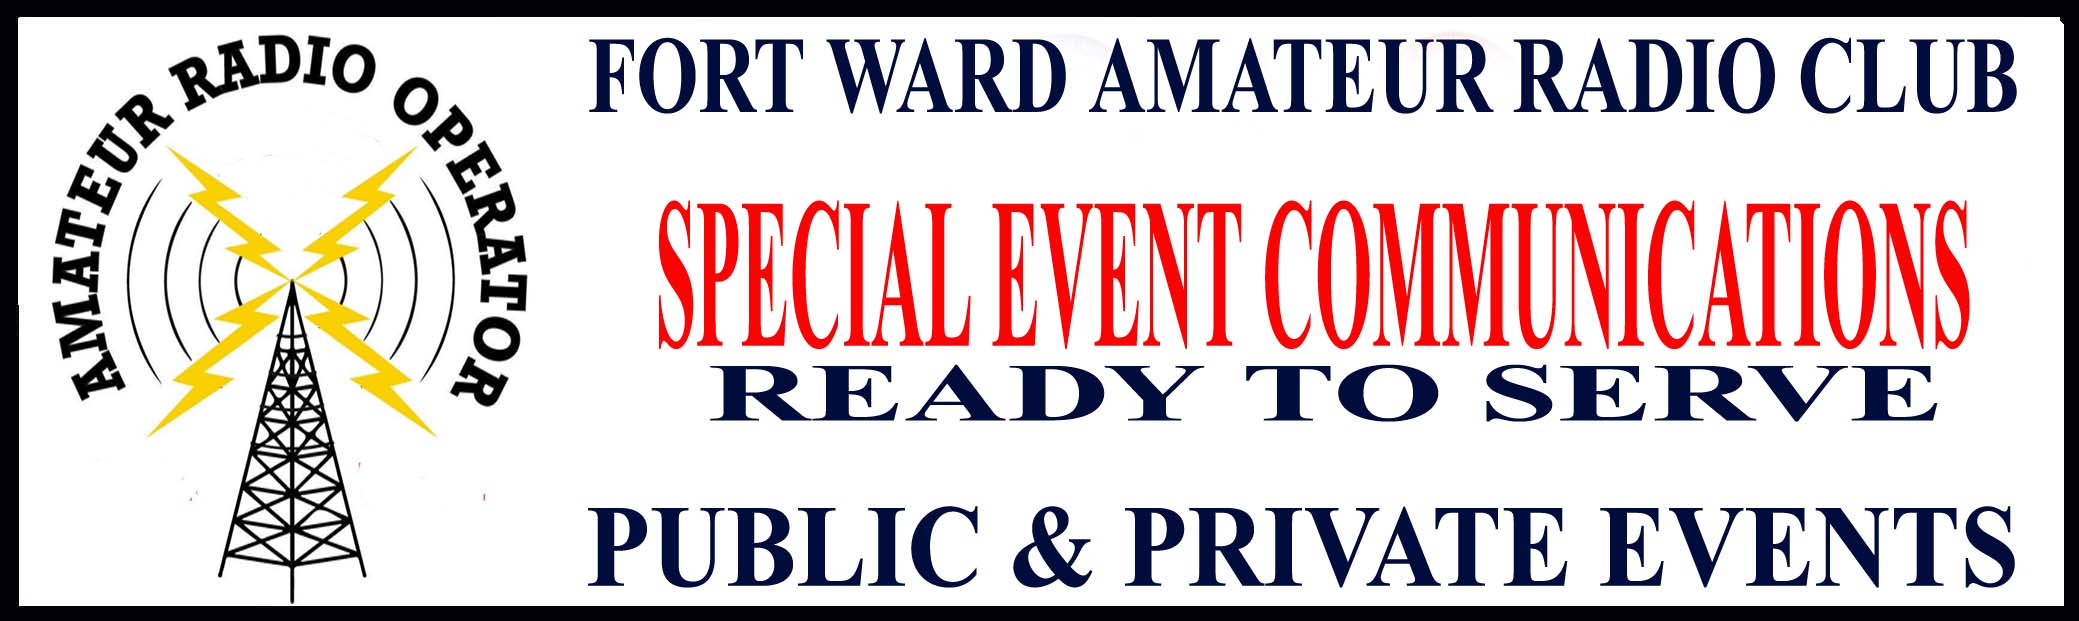 public service amateurs communications event